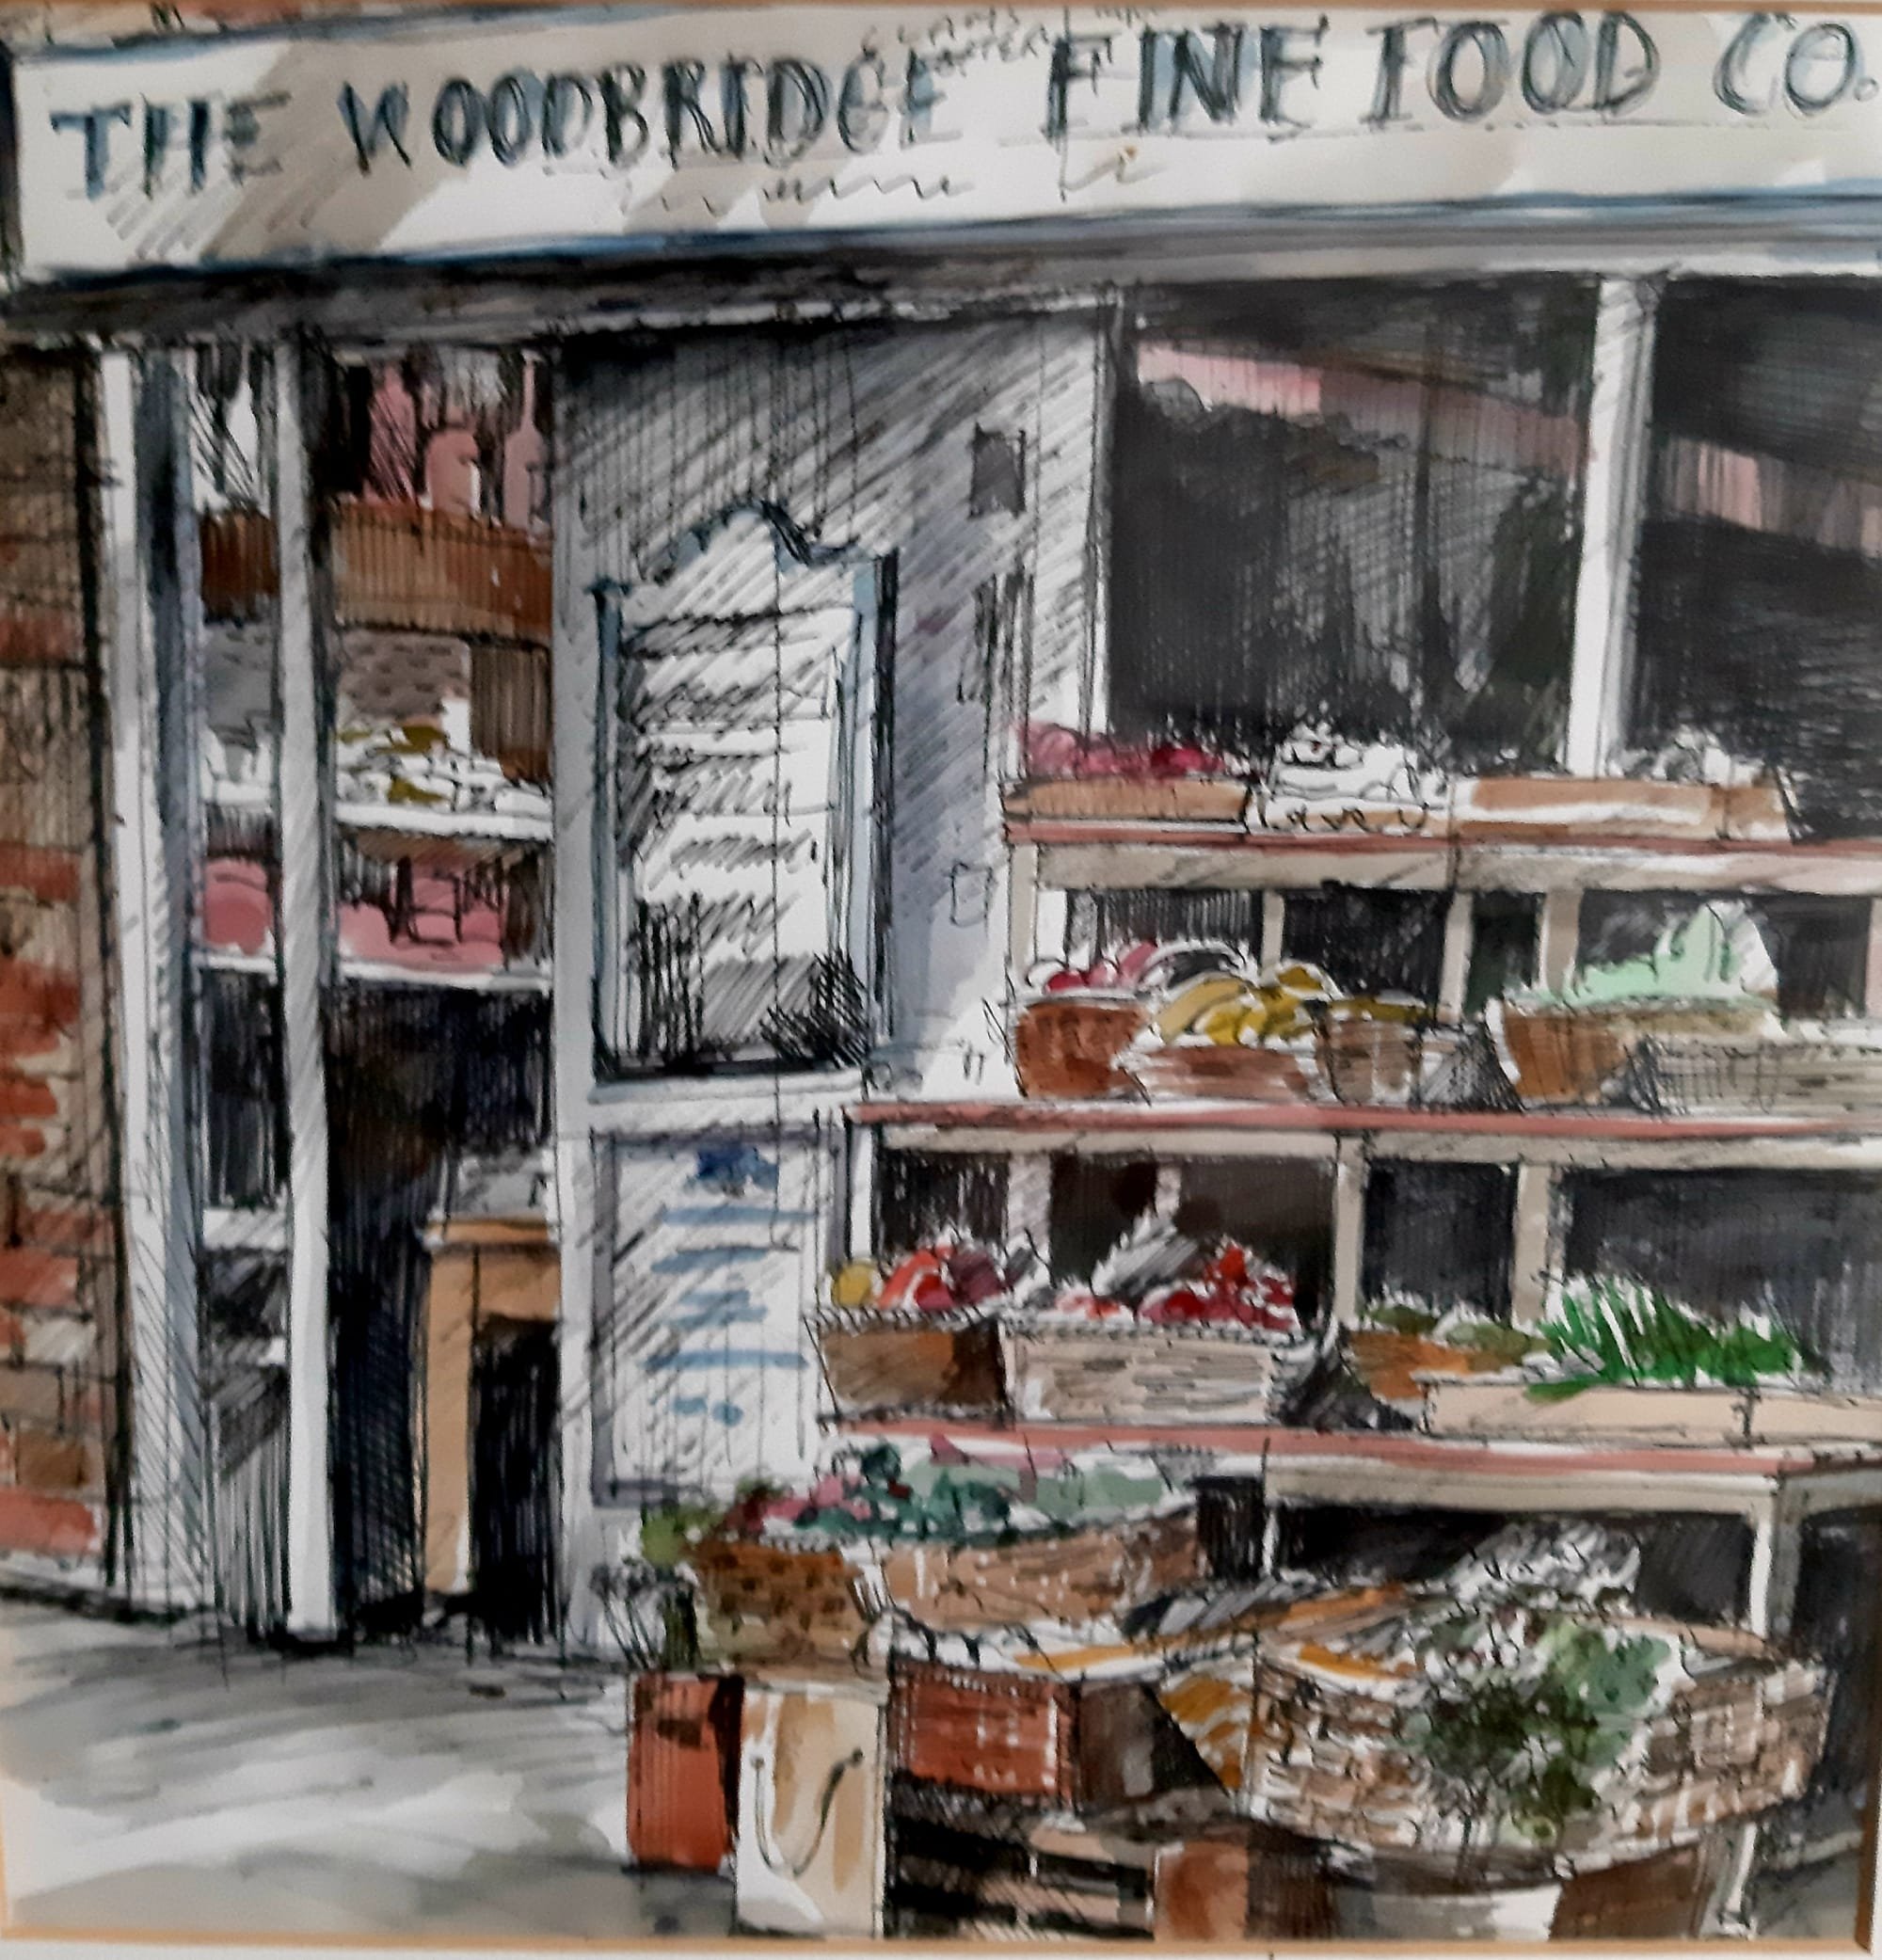 Woodbridge Fine Food, mixed media on paper, 2018